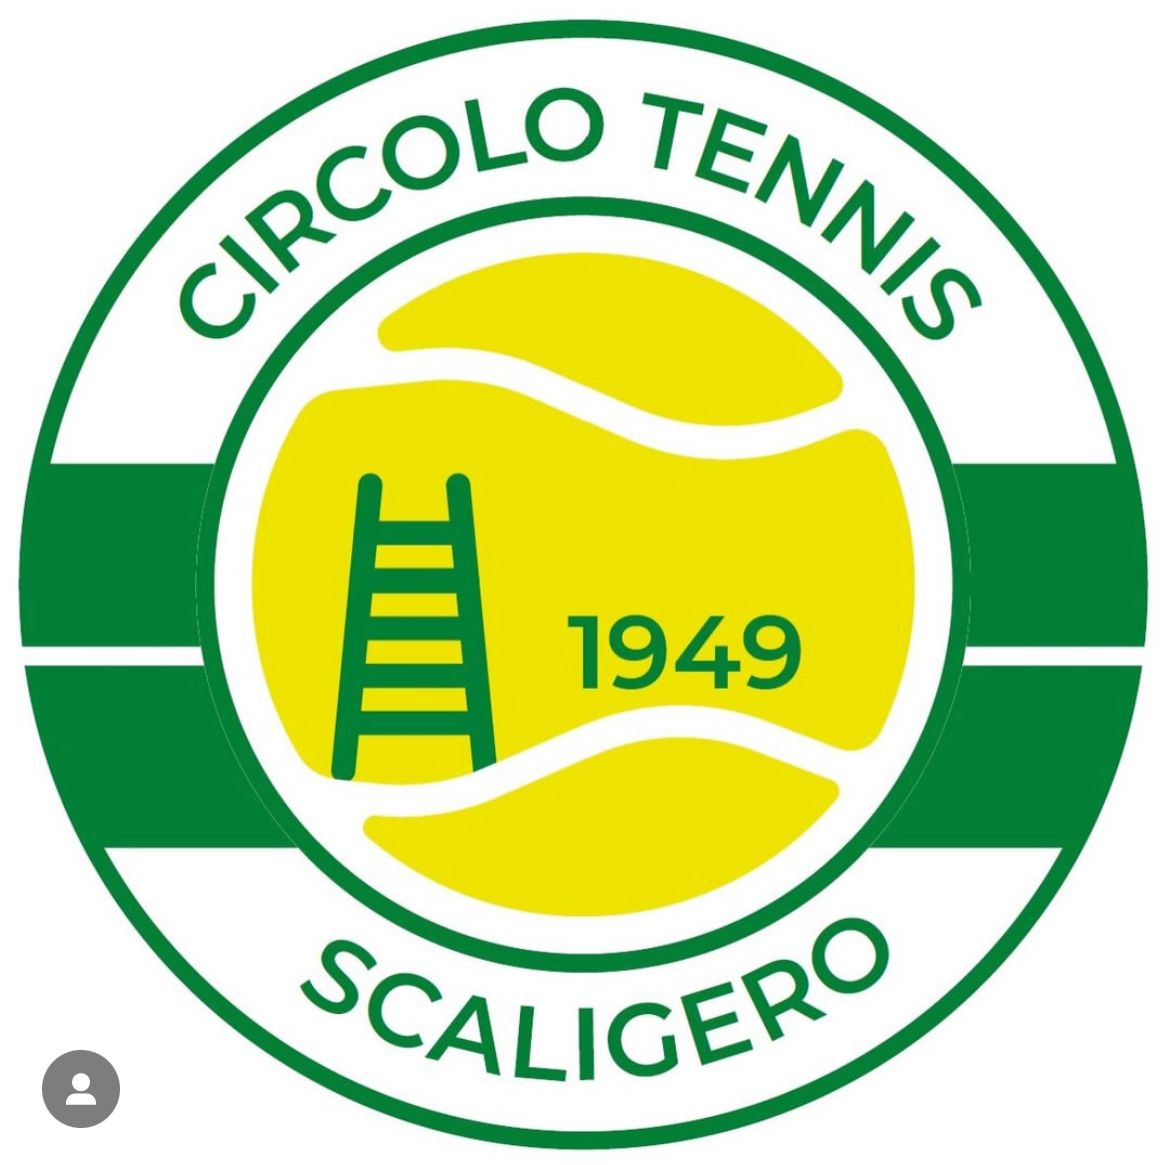 Tennis: l’A1 dell’At Verona Falconeri si inchina alla capolista Palermo. Vittoria e salvezza per l’A2 maschile del Ct Scaligero